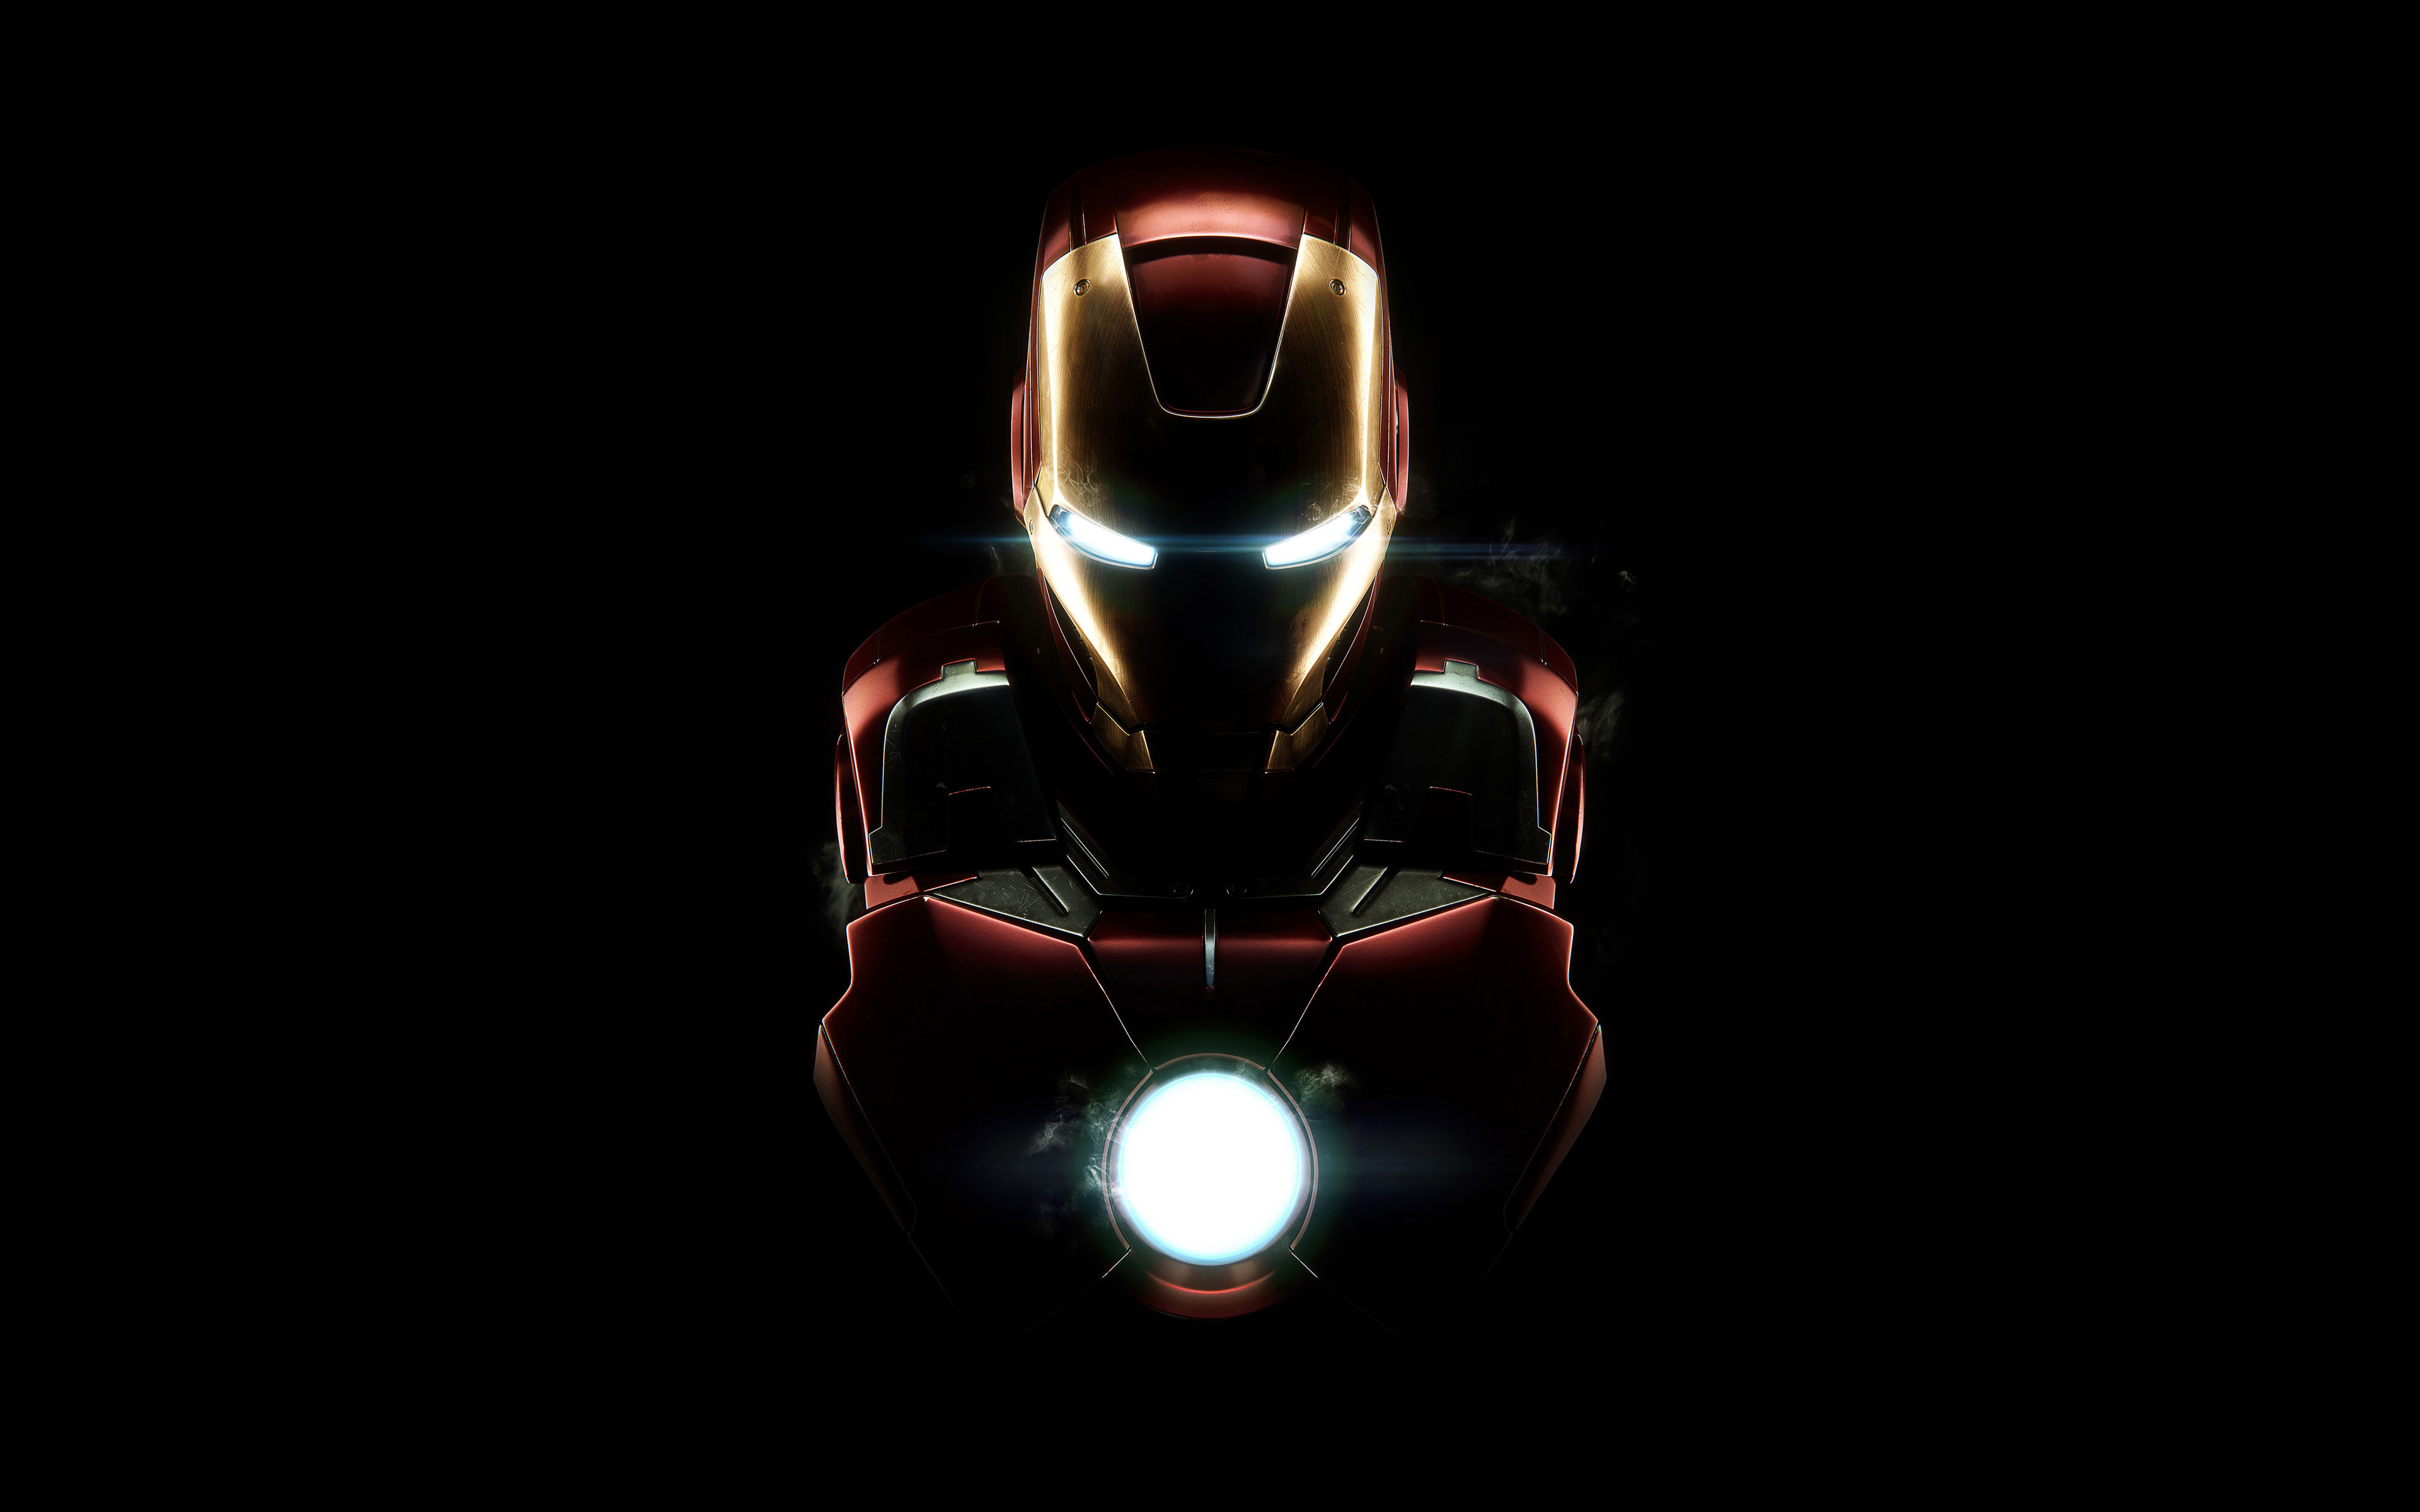 fond d'écran iron man 4k,homme de fer,personnage fictif,super héros,éclairage automobile,ténèbres